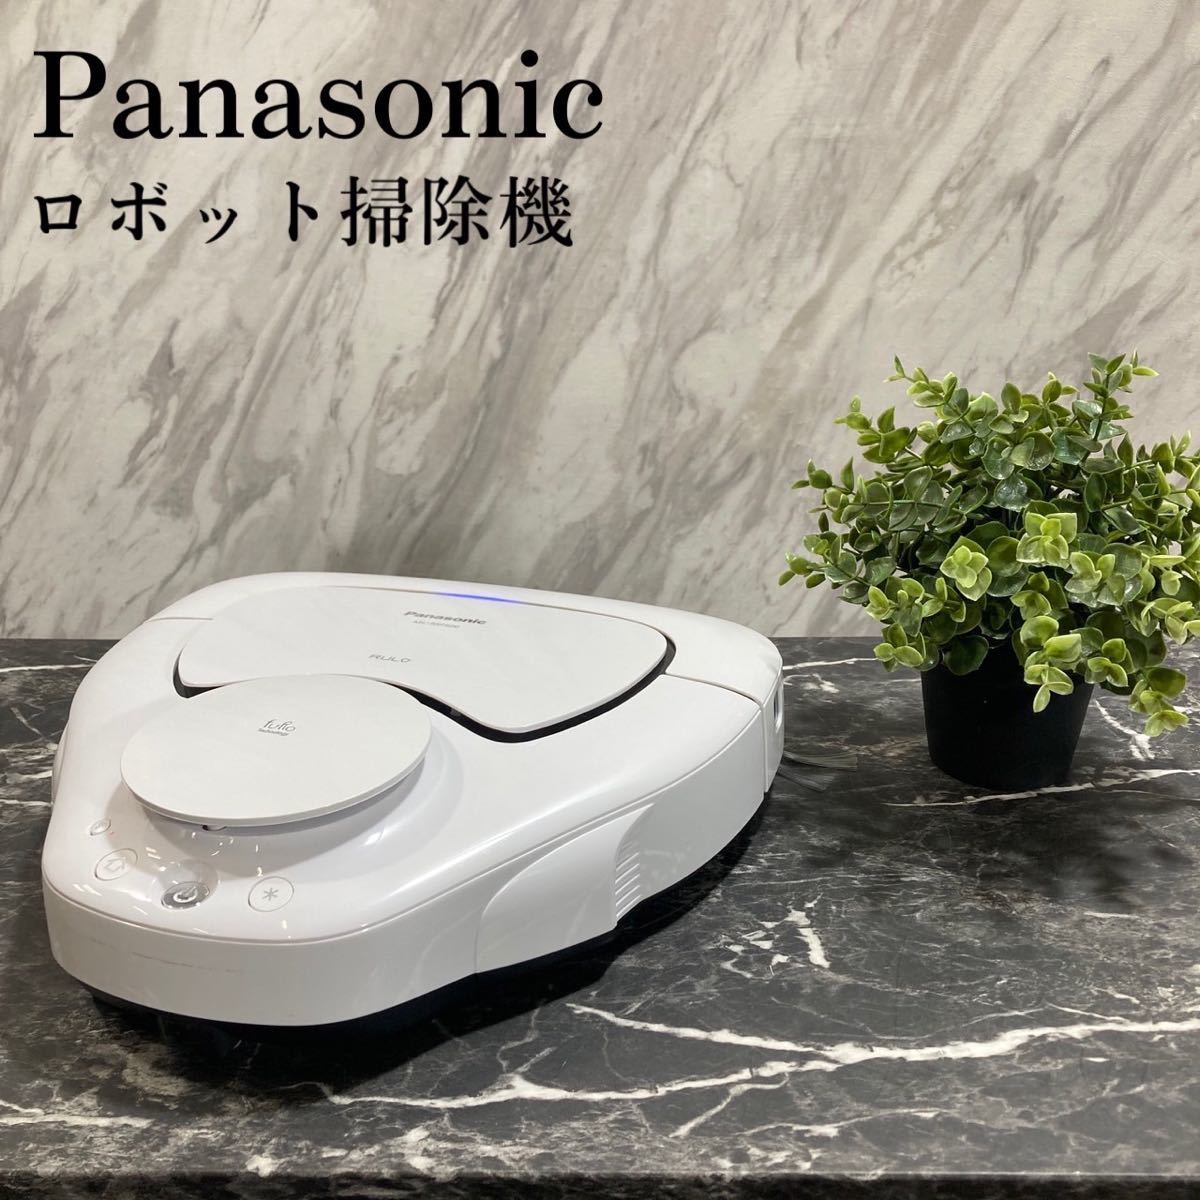 ファッションなデザイン Panasonicルーロロボット掃除機MC-RSF600-W